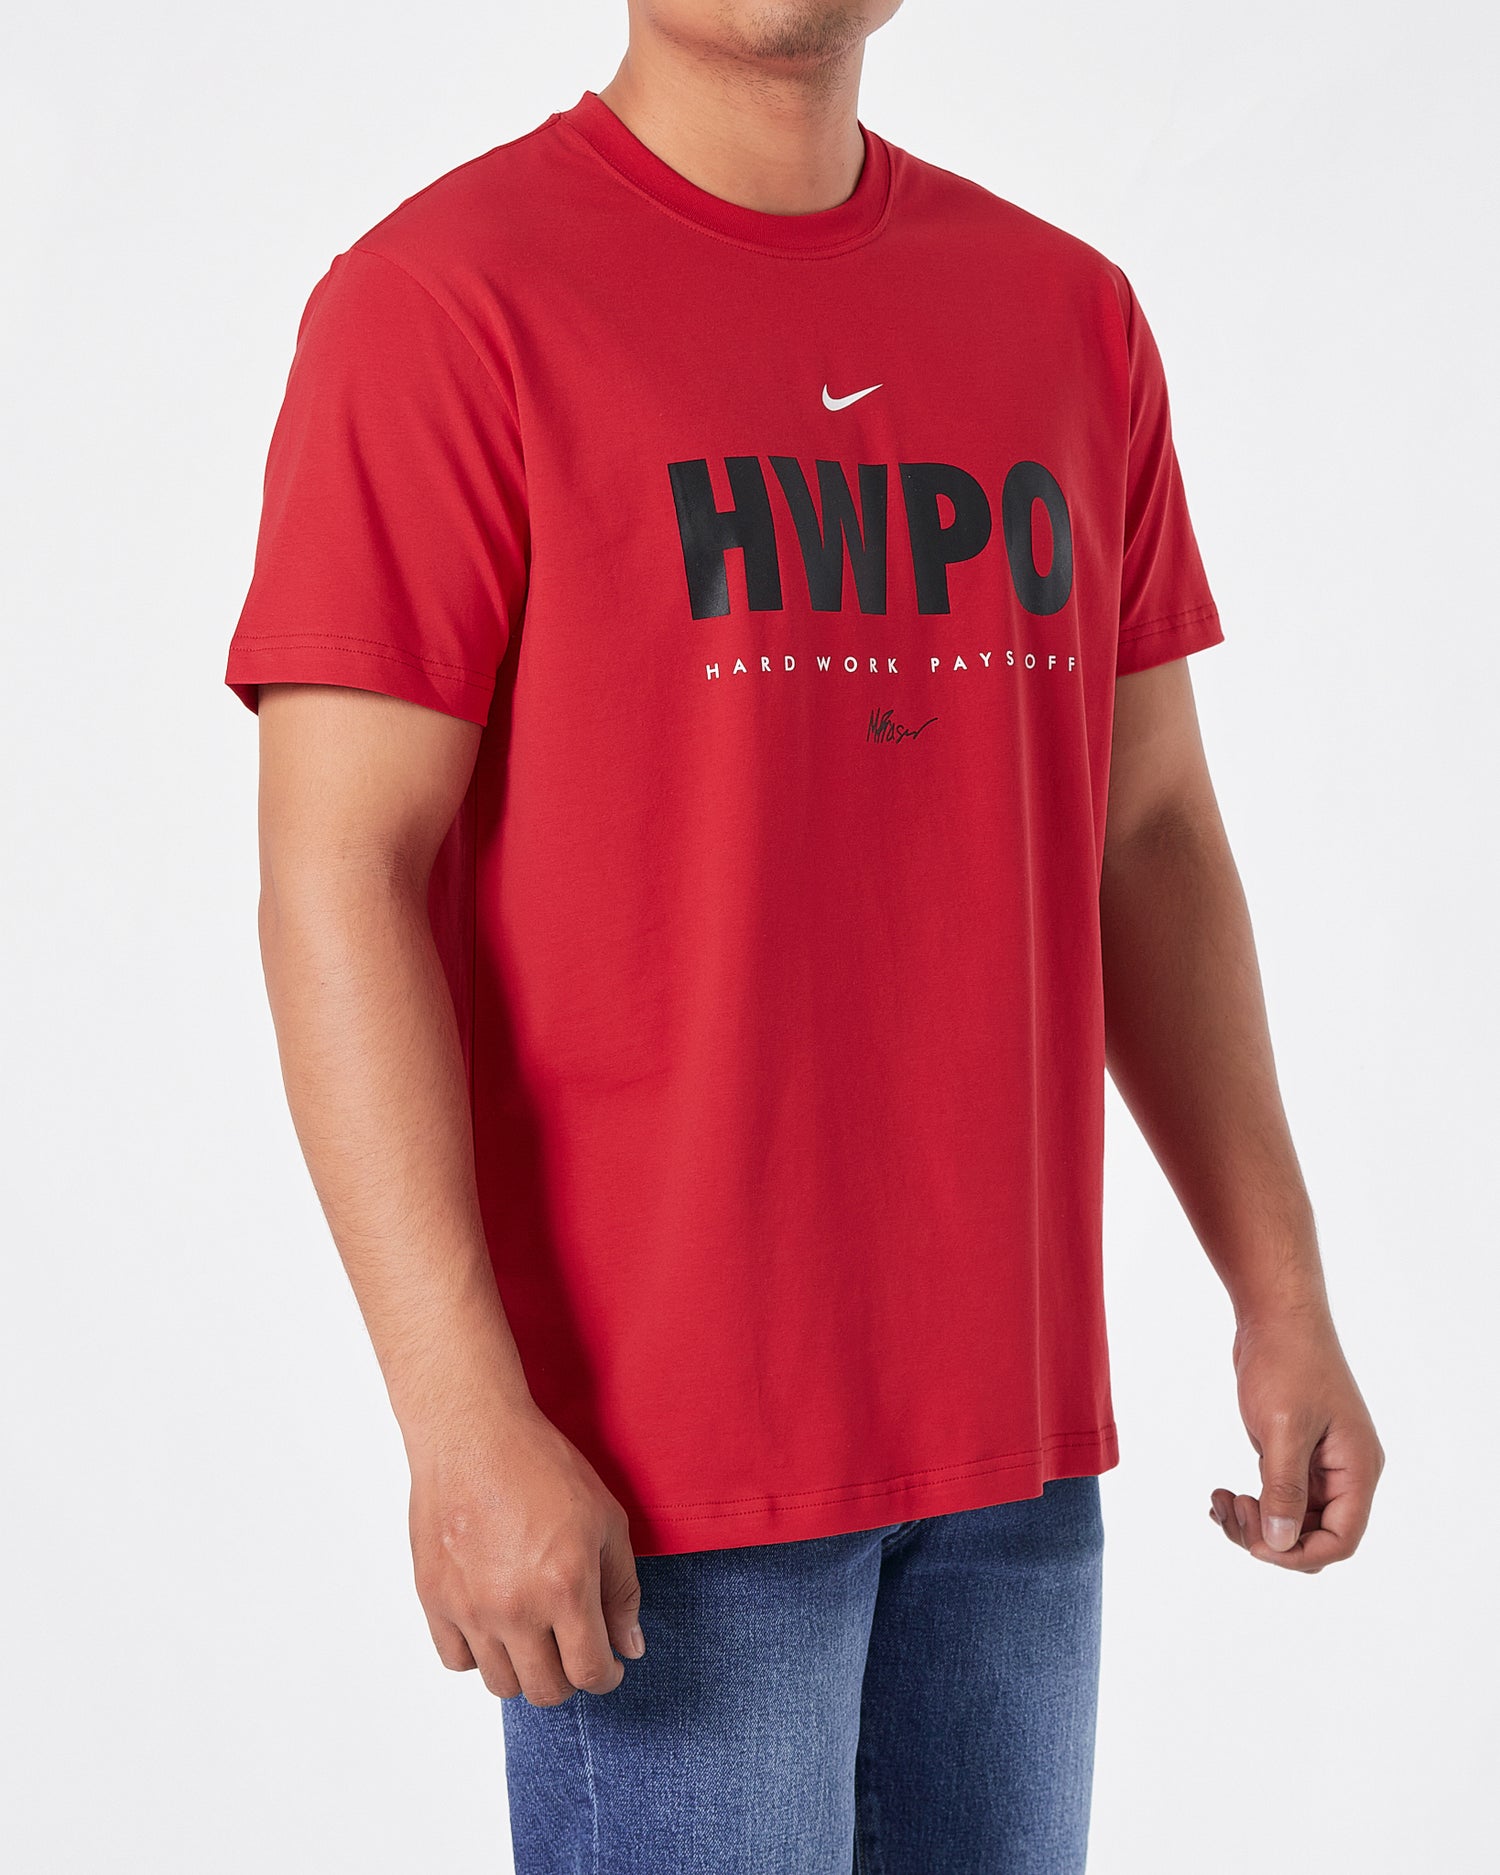 NIK HWPO Men Red T-Shirt 14.90